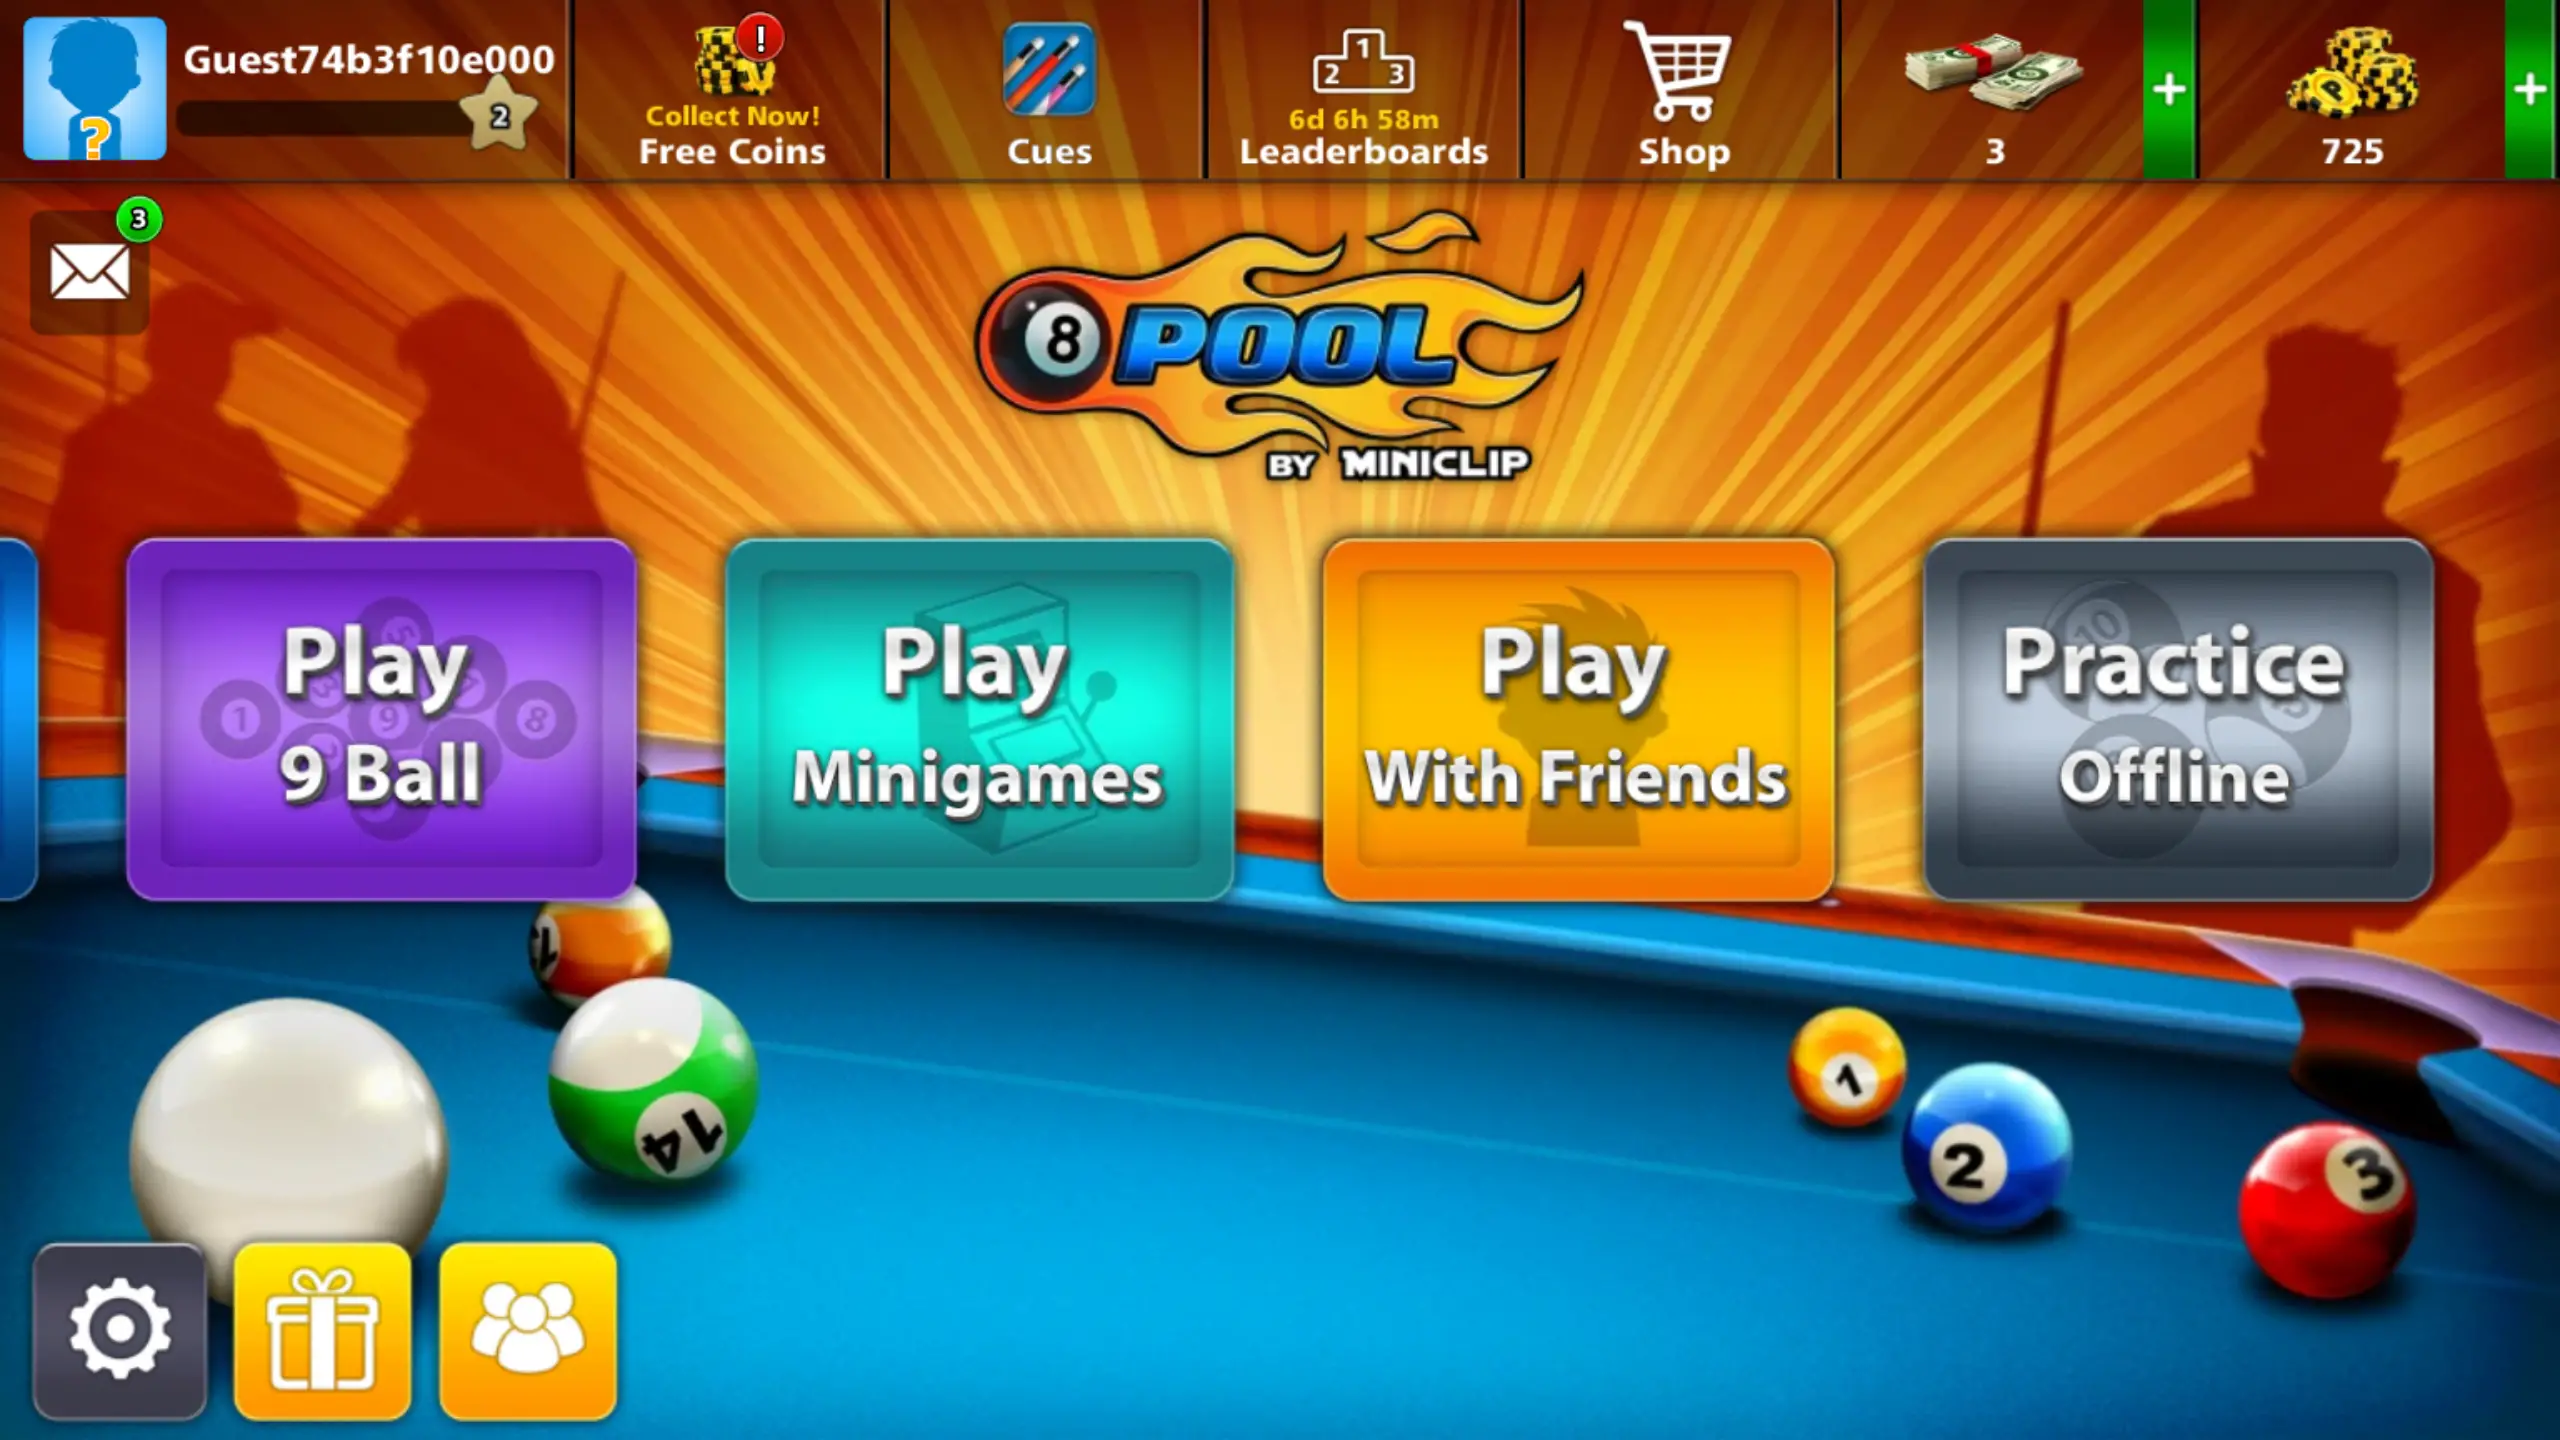 Tela do jogo mostrando jogos online e offline